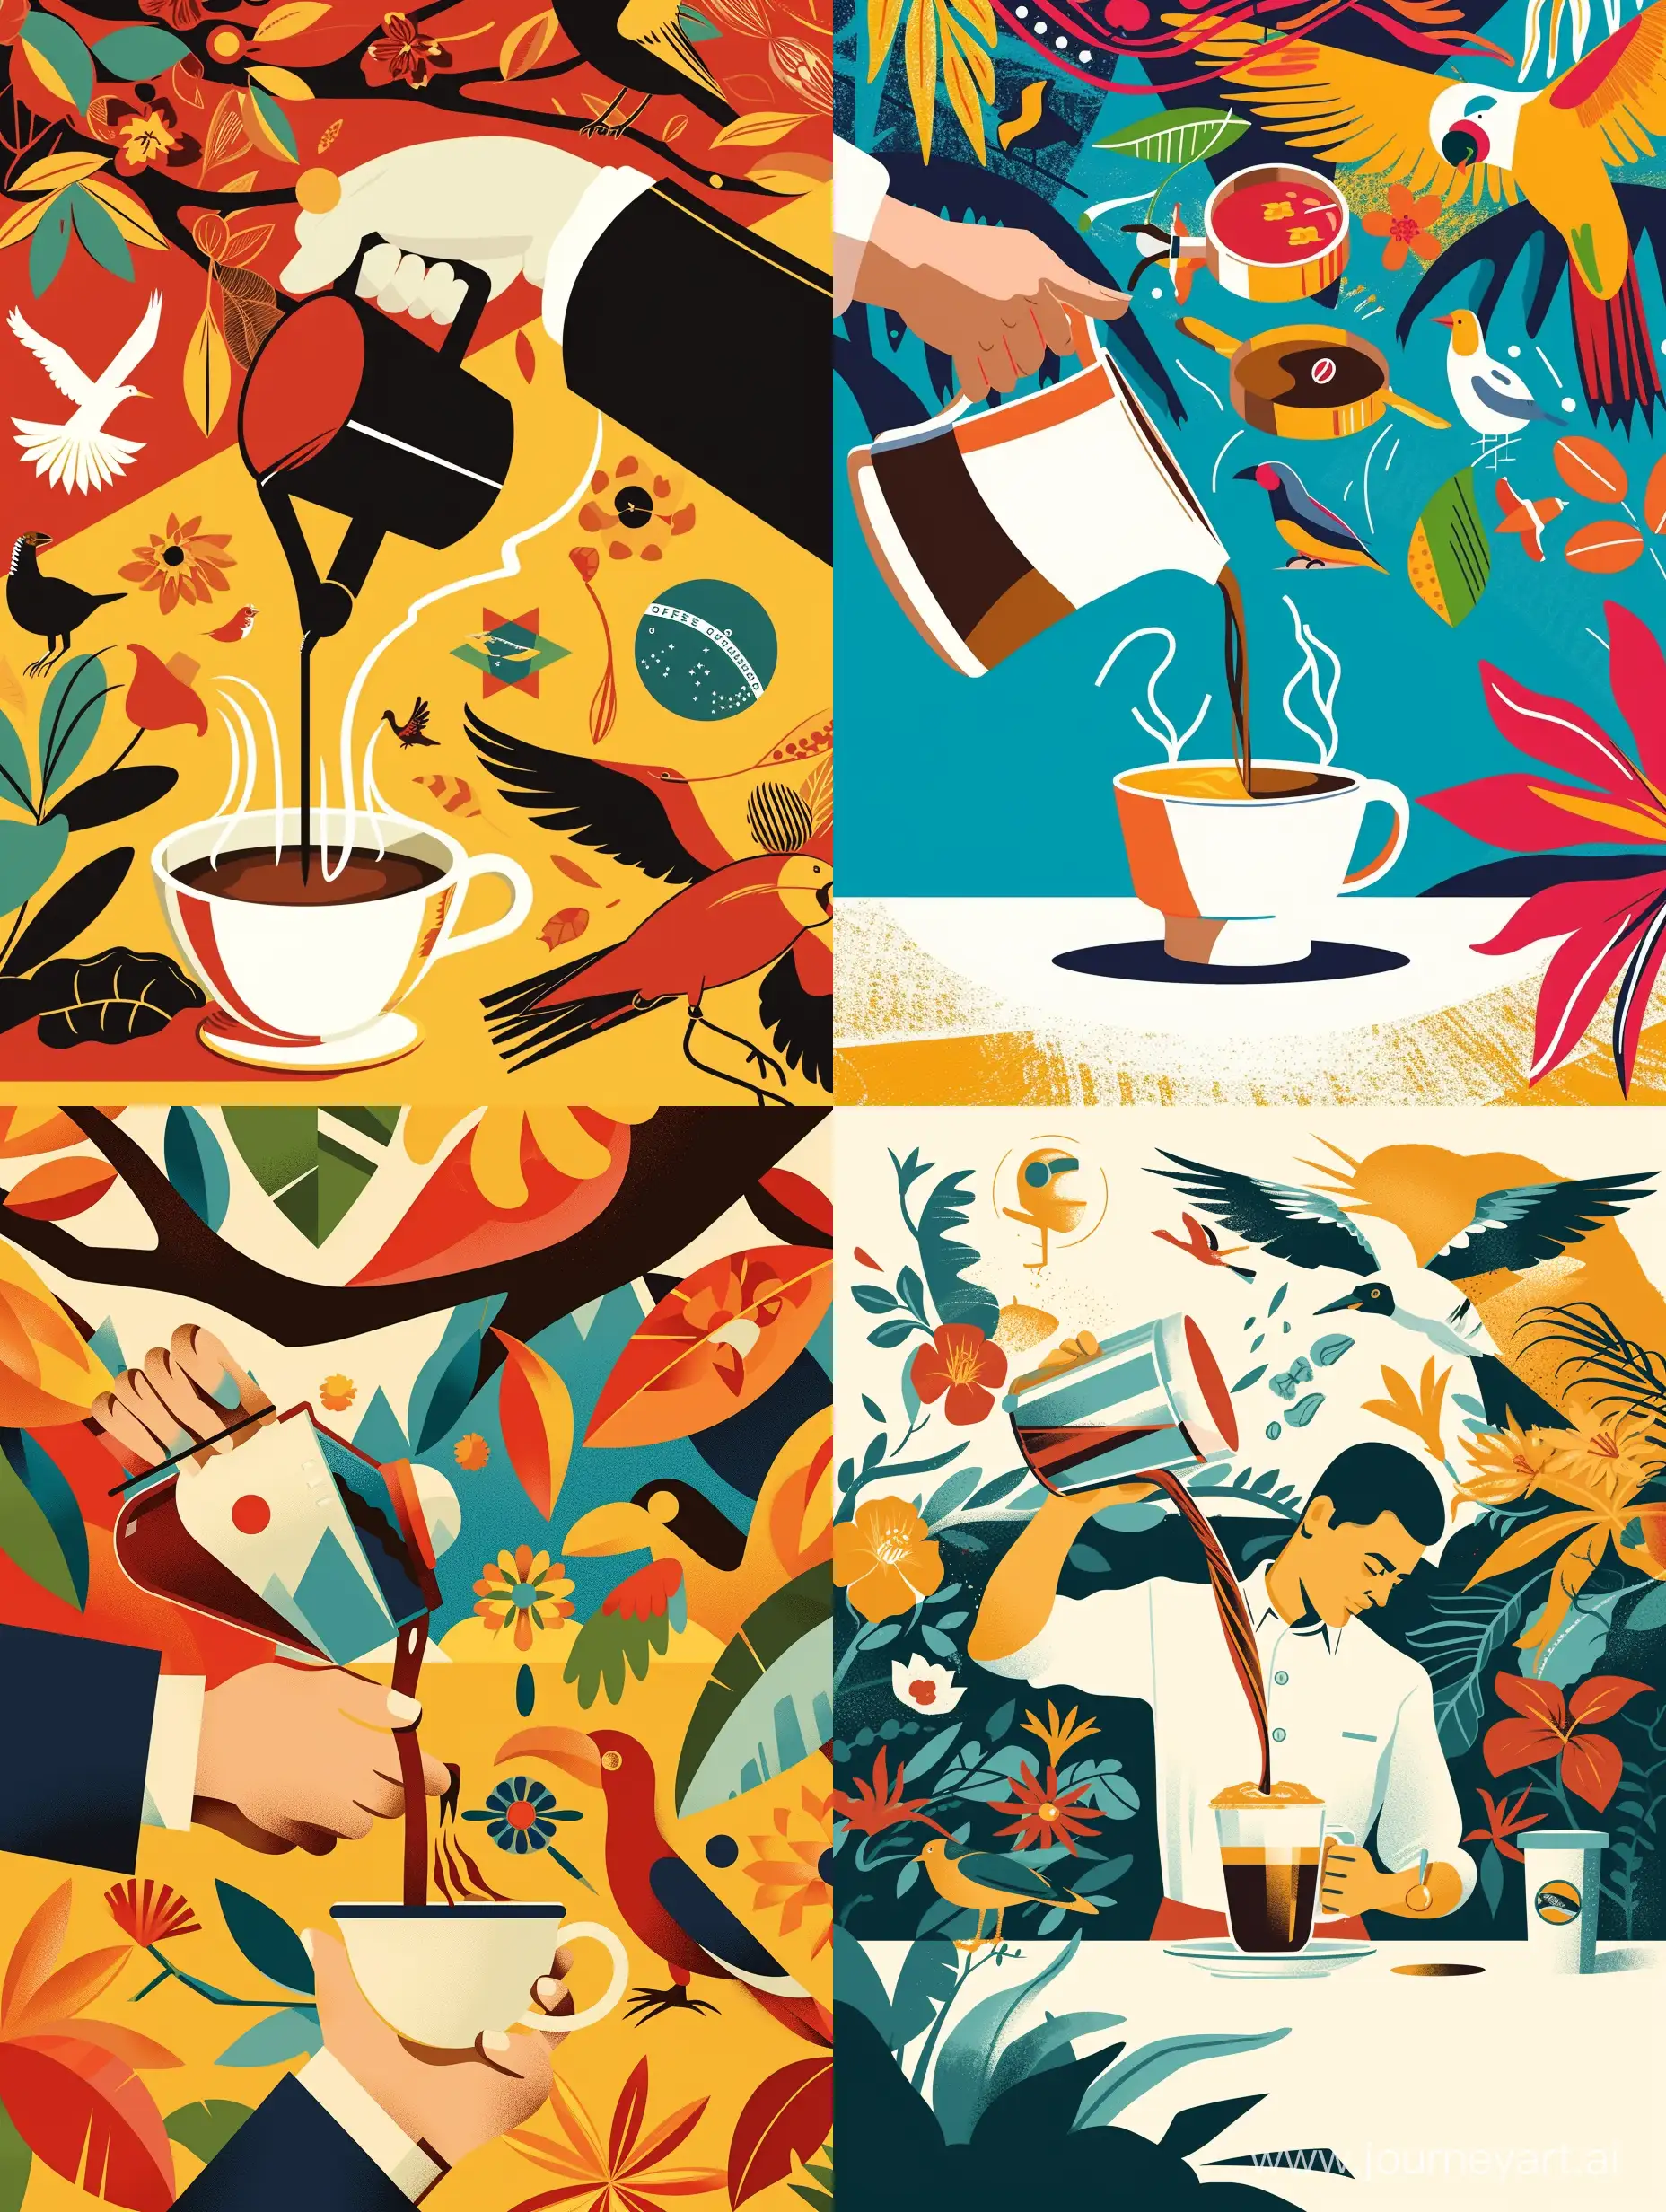 Иллюстрация в стиле современная абстракция бариста наливает кофе в чашку и протягивает ее вперед на заднем плане символы Бразилии, природа, птицы и животные Бразилии, в ярких тонах